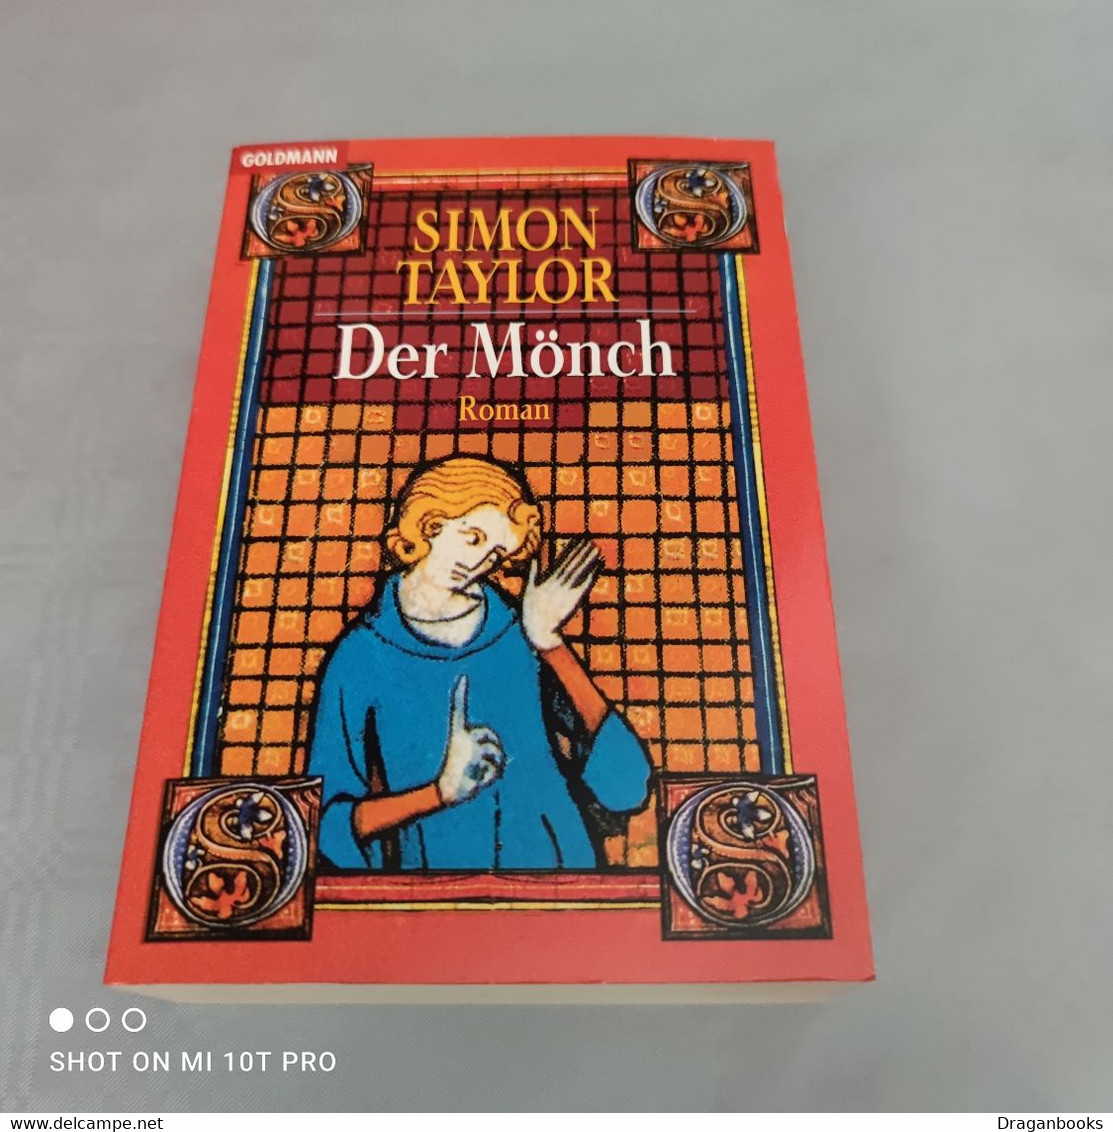 Simon Taylor - Der Mönch - Krimis & Thriller